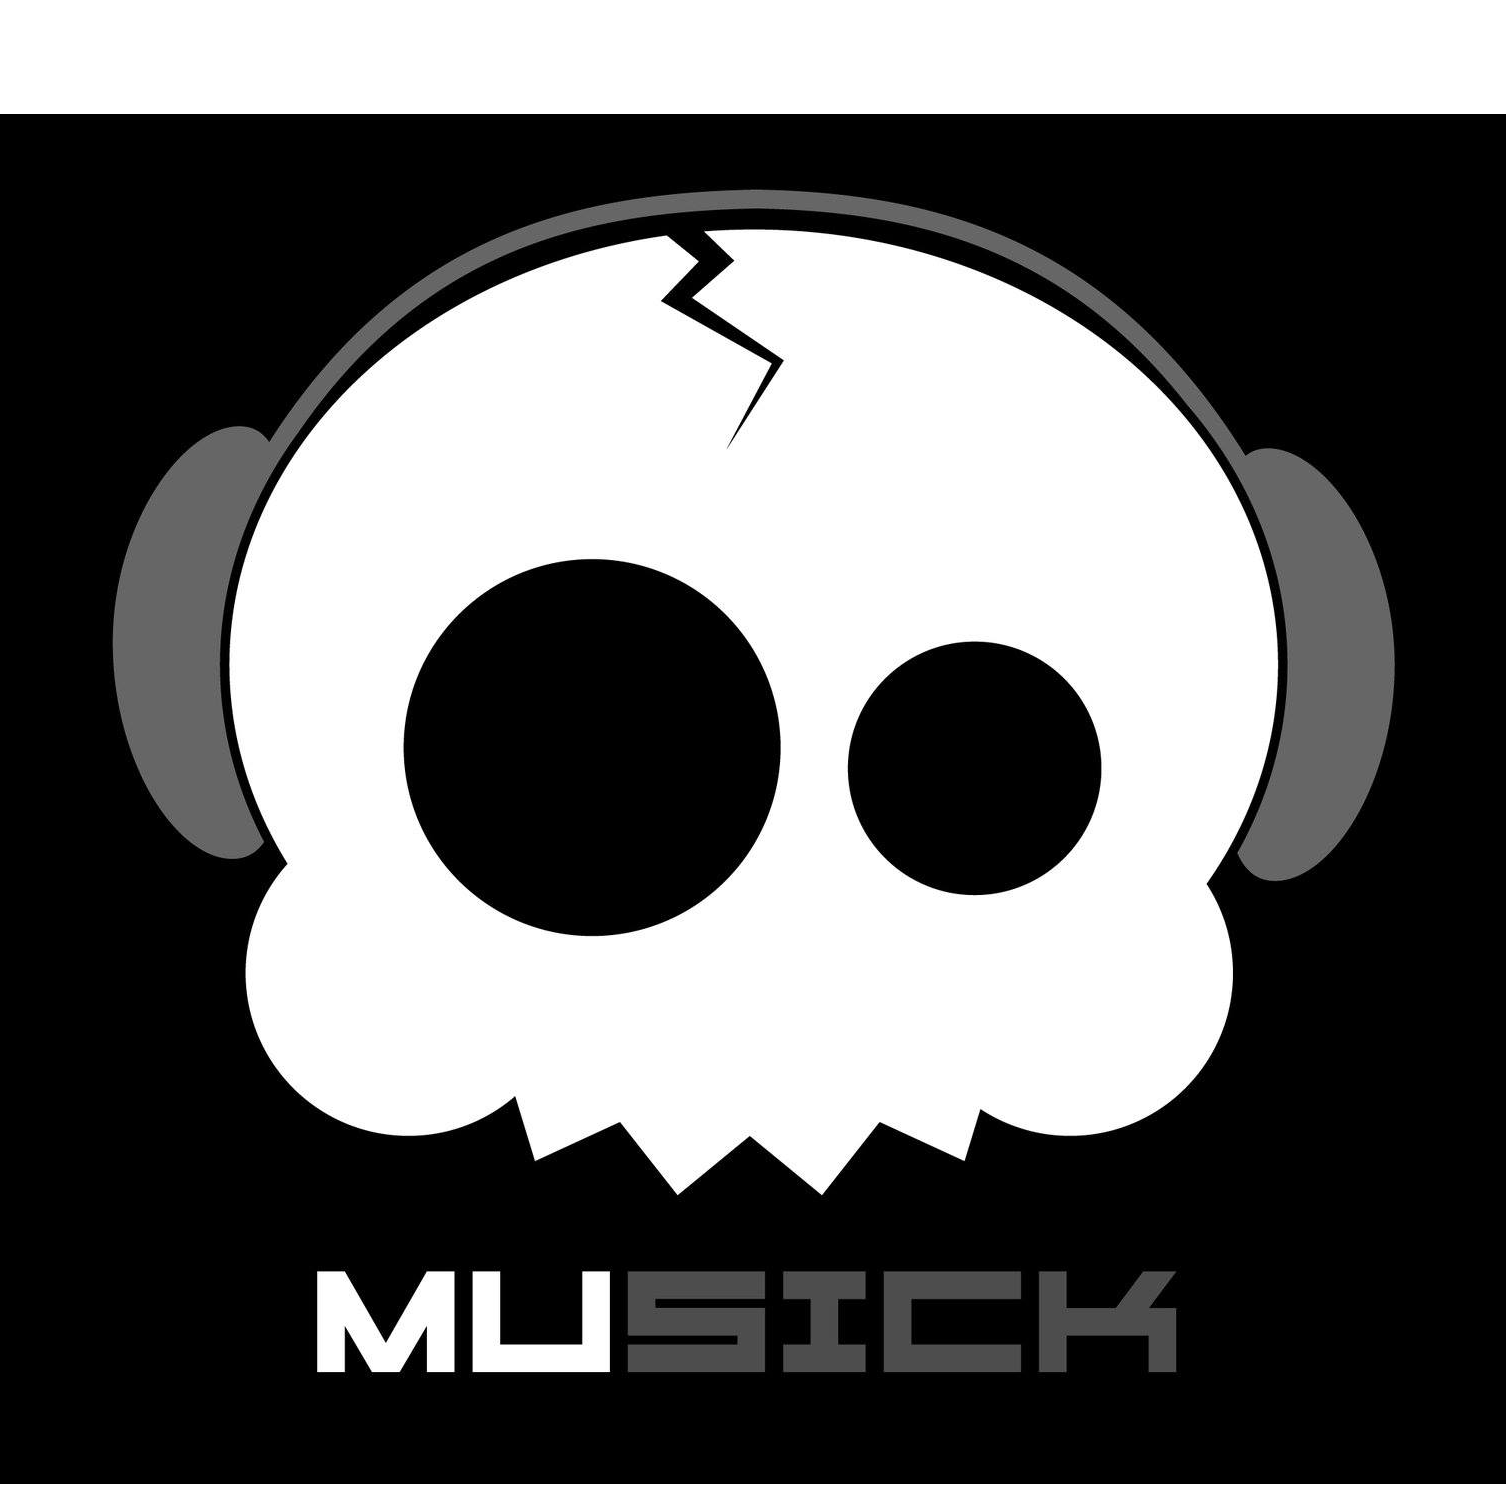 Radio Musick